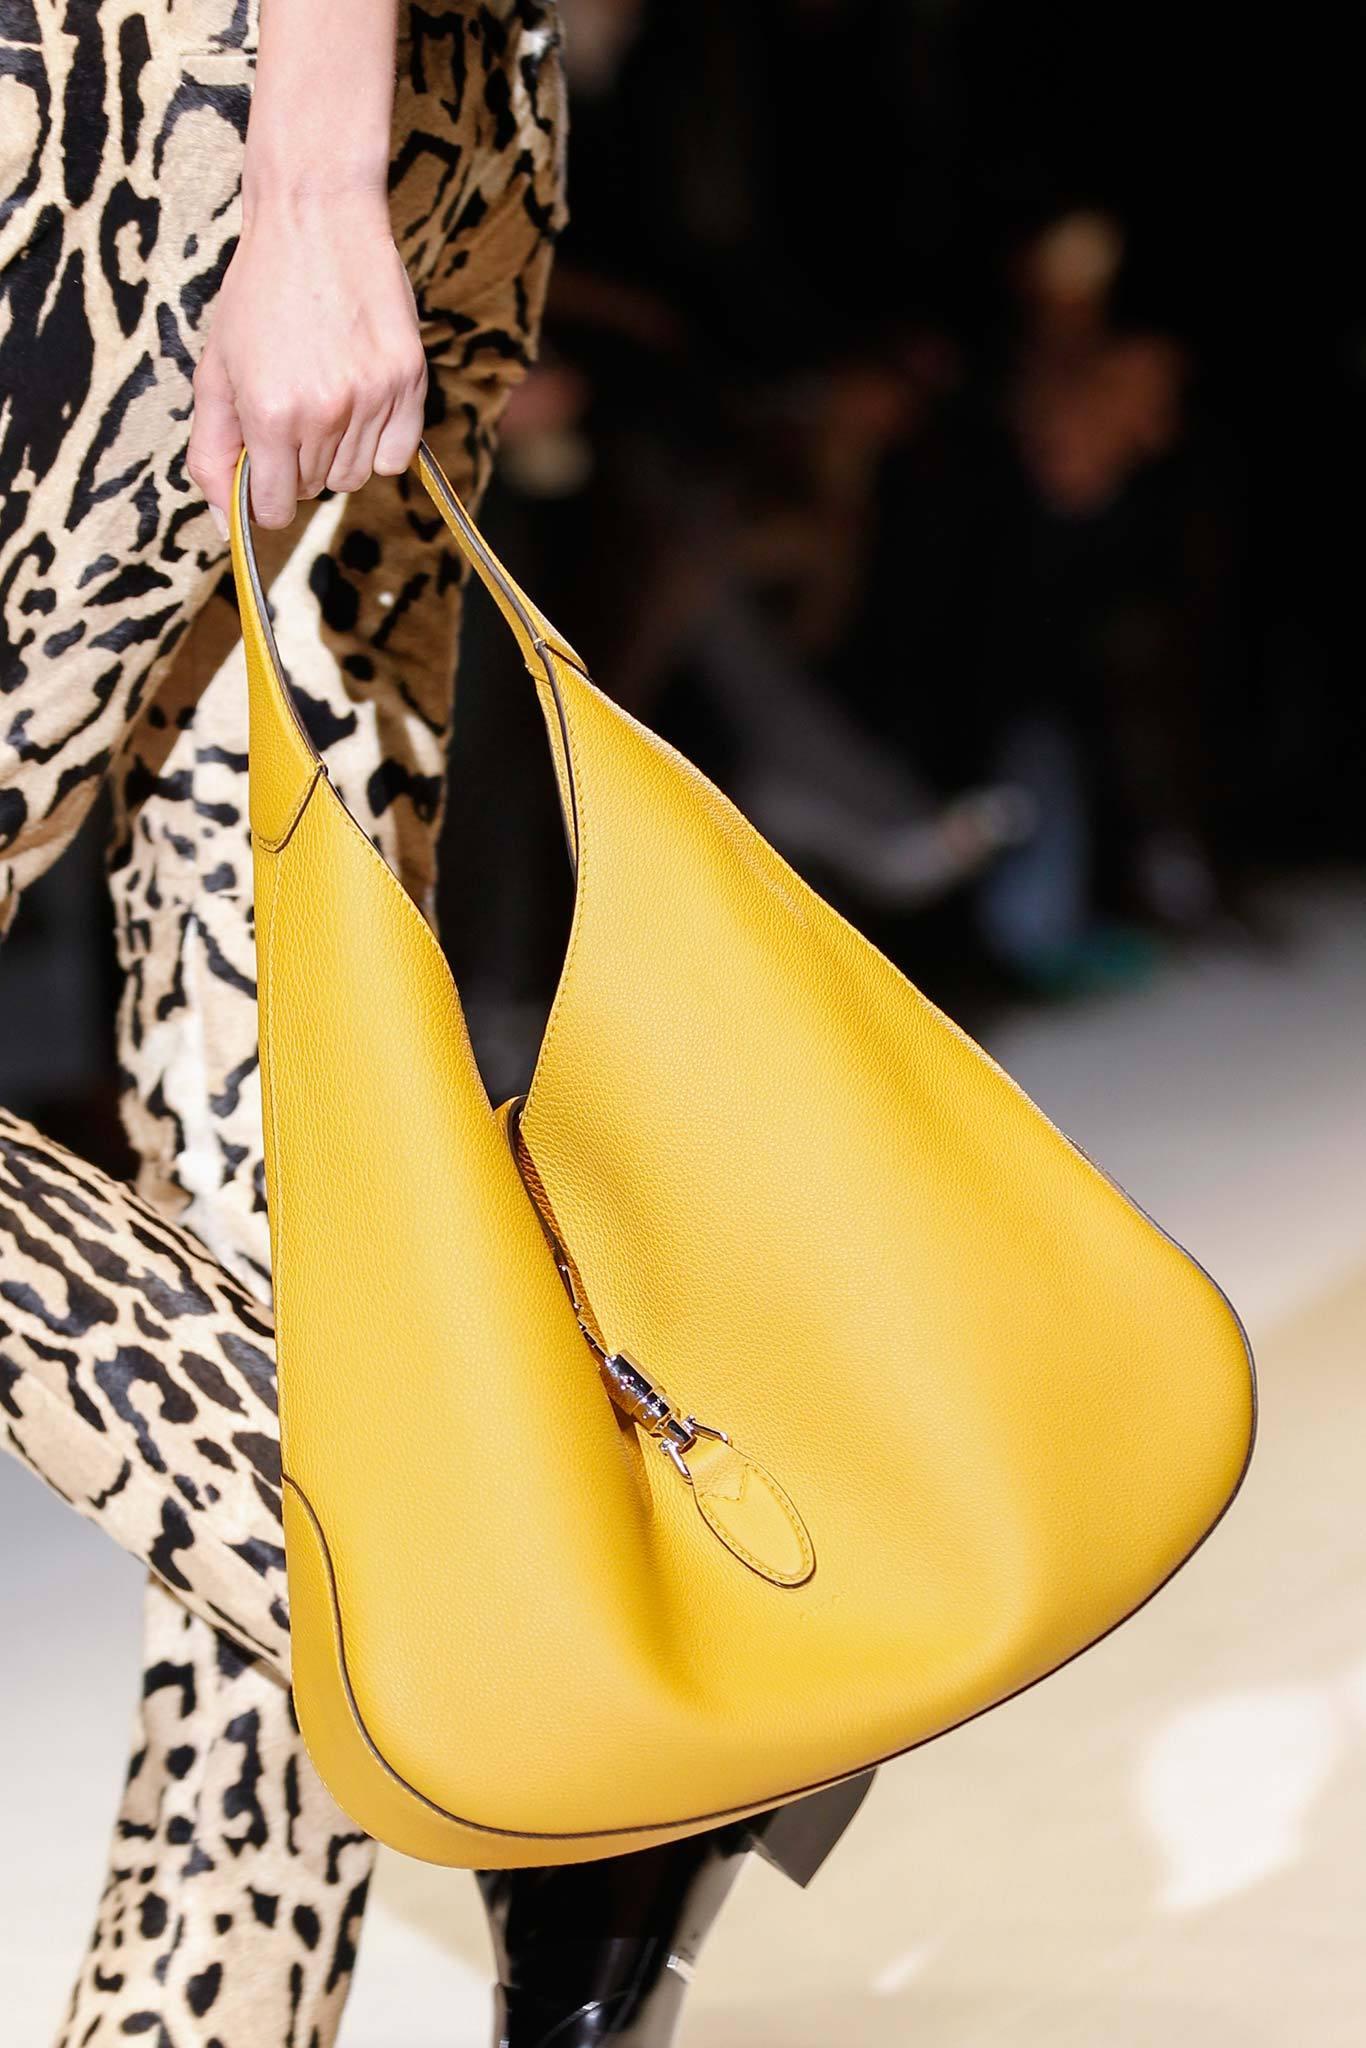 Nouveauté Gucci extra large sac Jackie O Gaga en cuir rose 3595 $ automne 2014 en vente 5